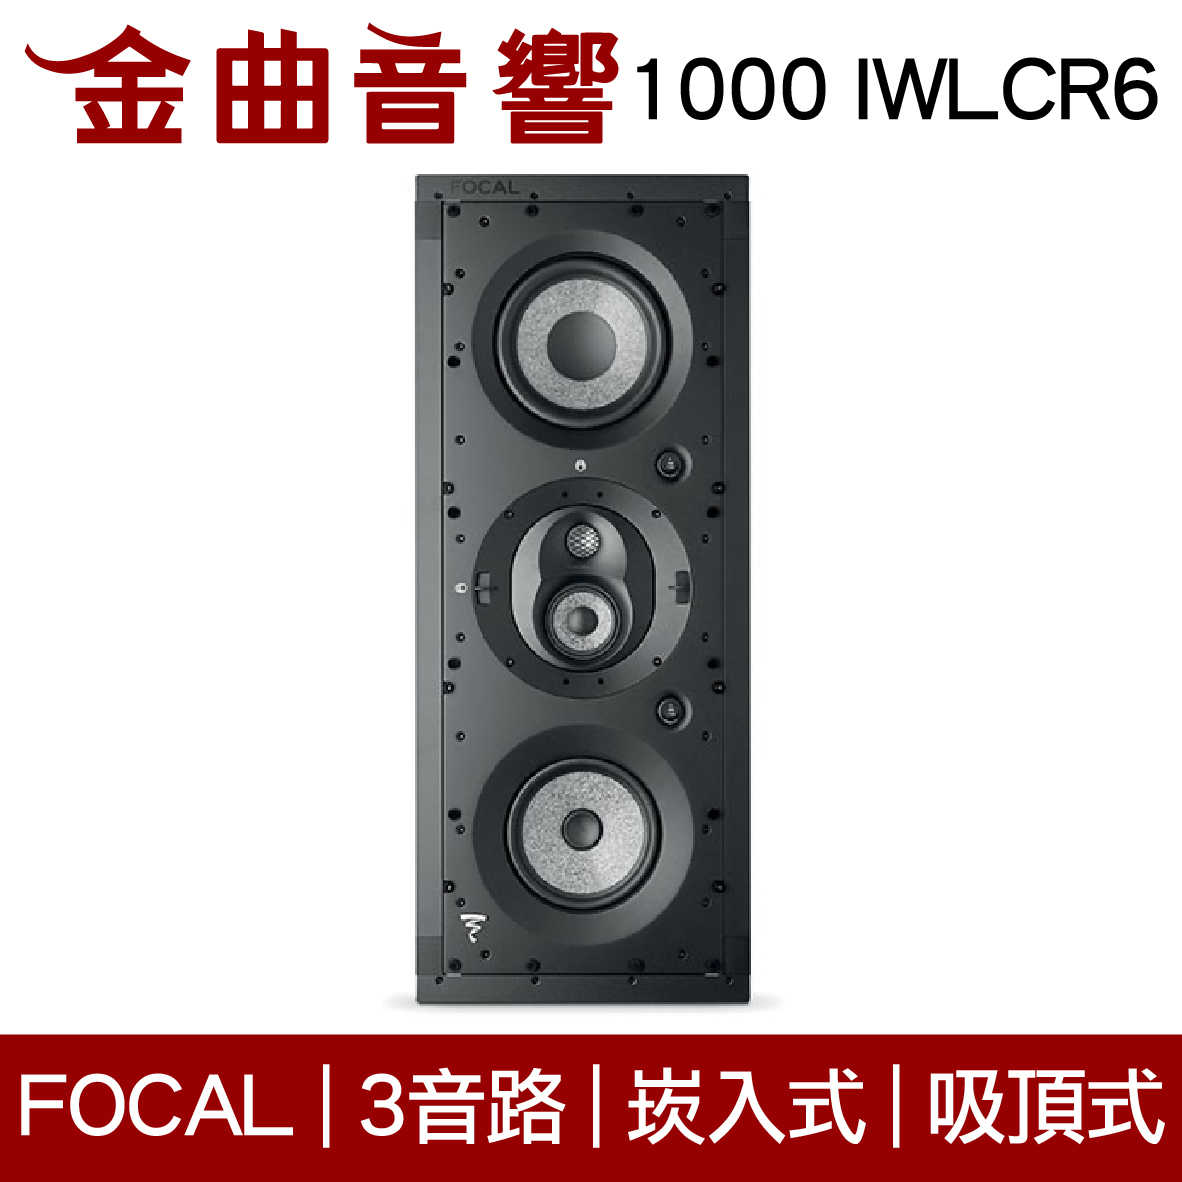 FOCAL 1000 IWLCR6 3音路 崁入式 喇叭 吸頂喇叭 音響（單隻）| 金曲音響